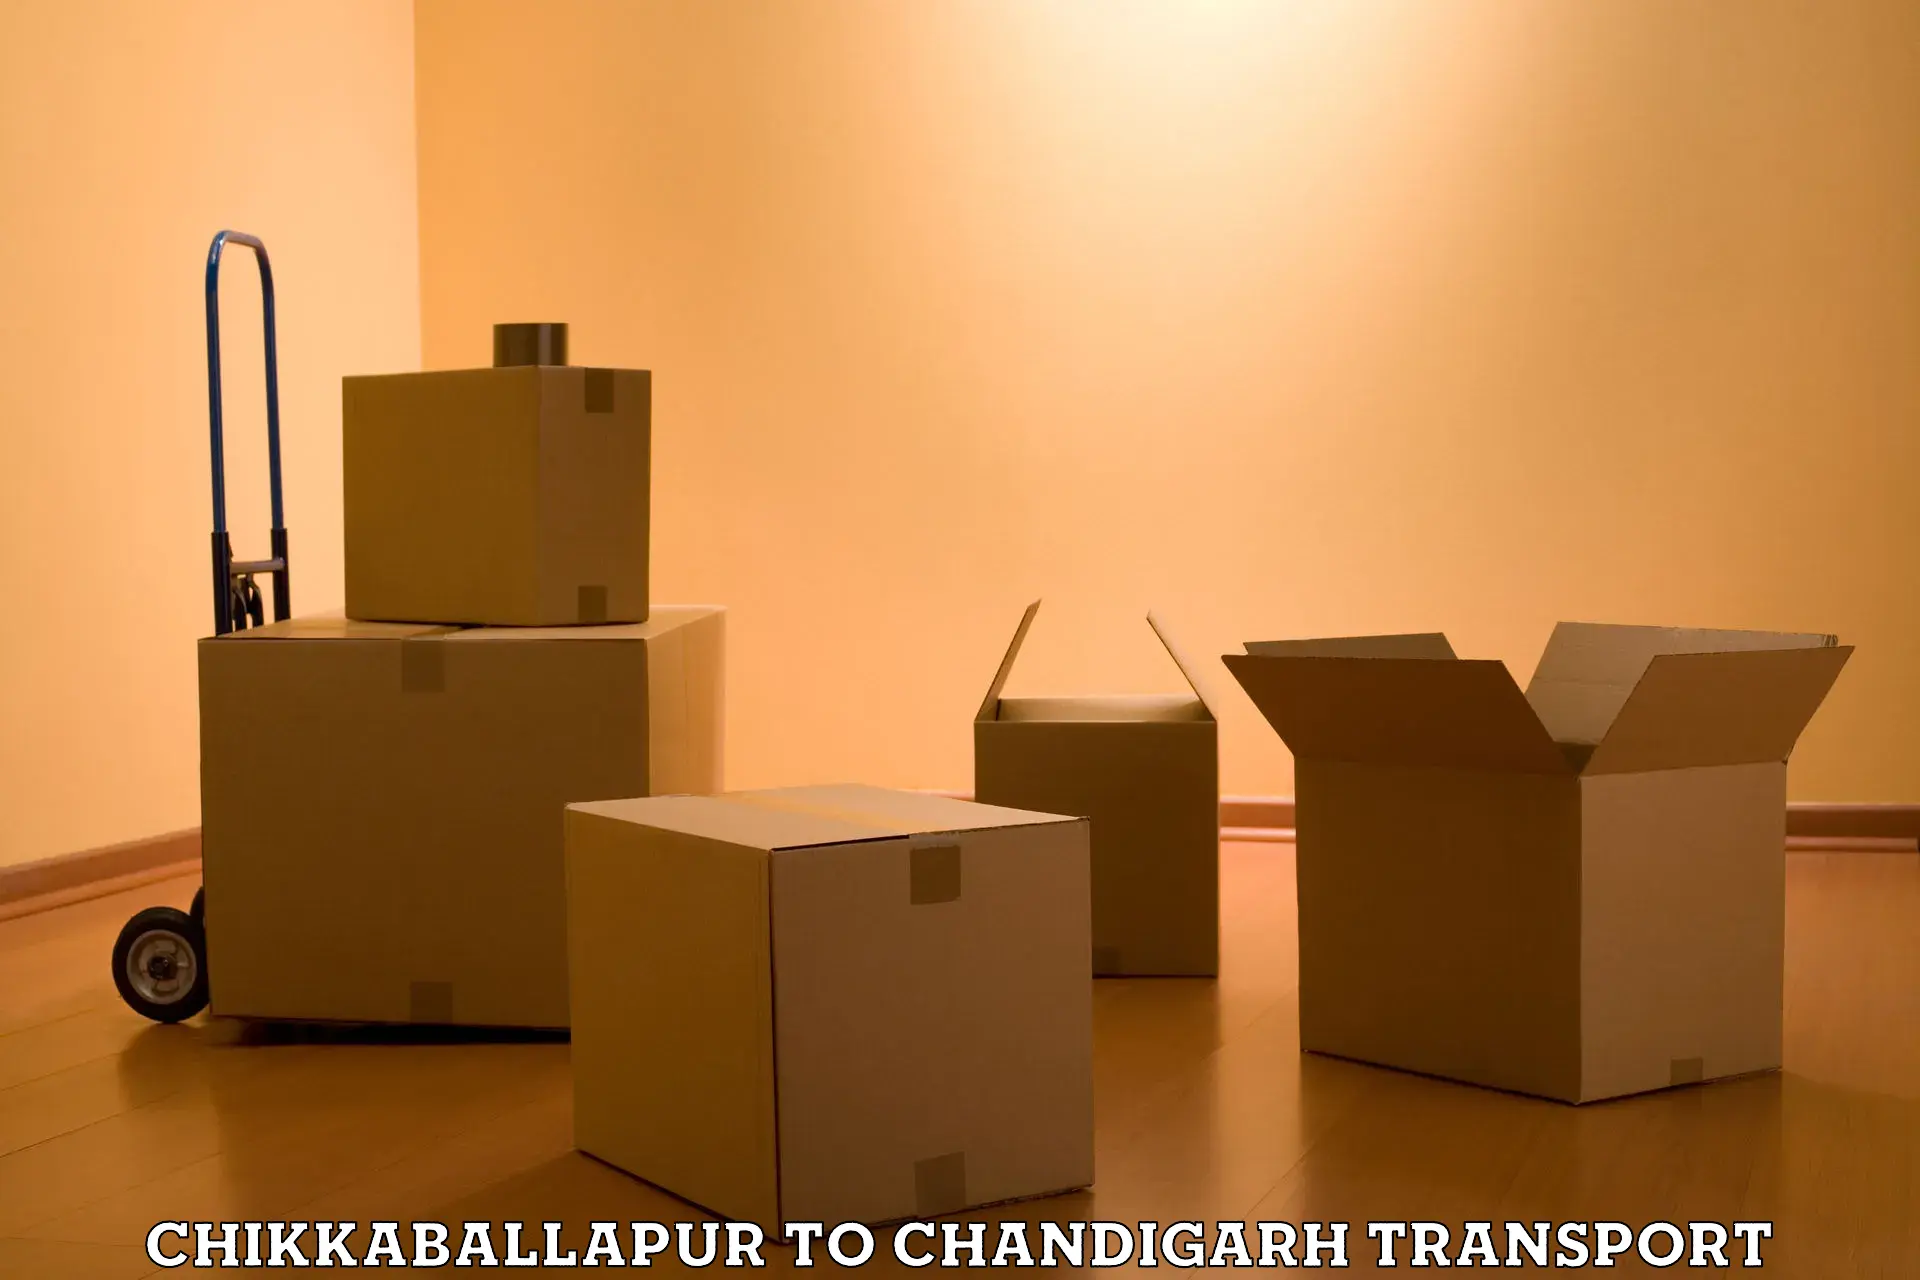 Express transport services Chikkaballapur to Chandigarh